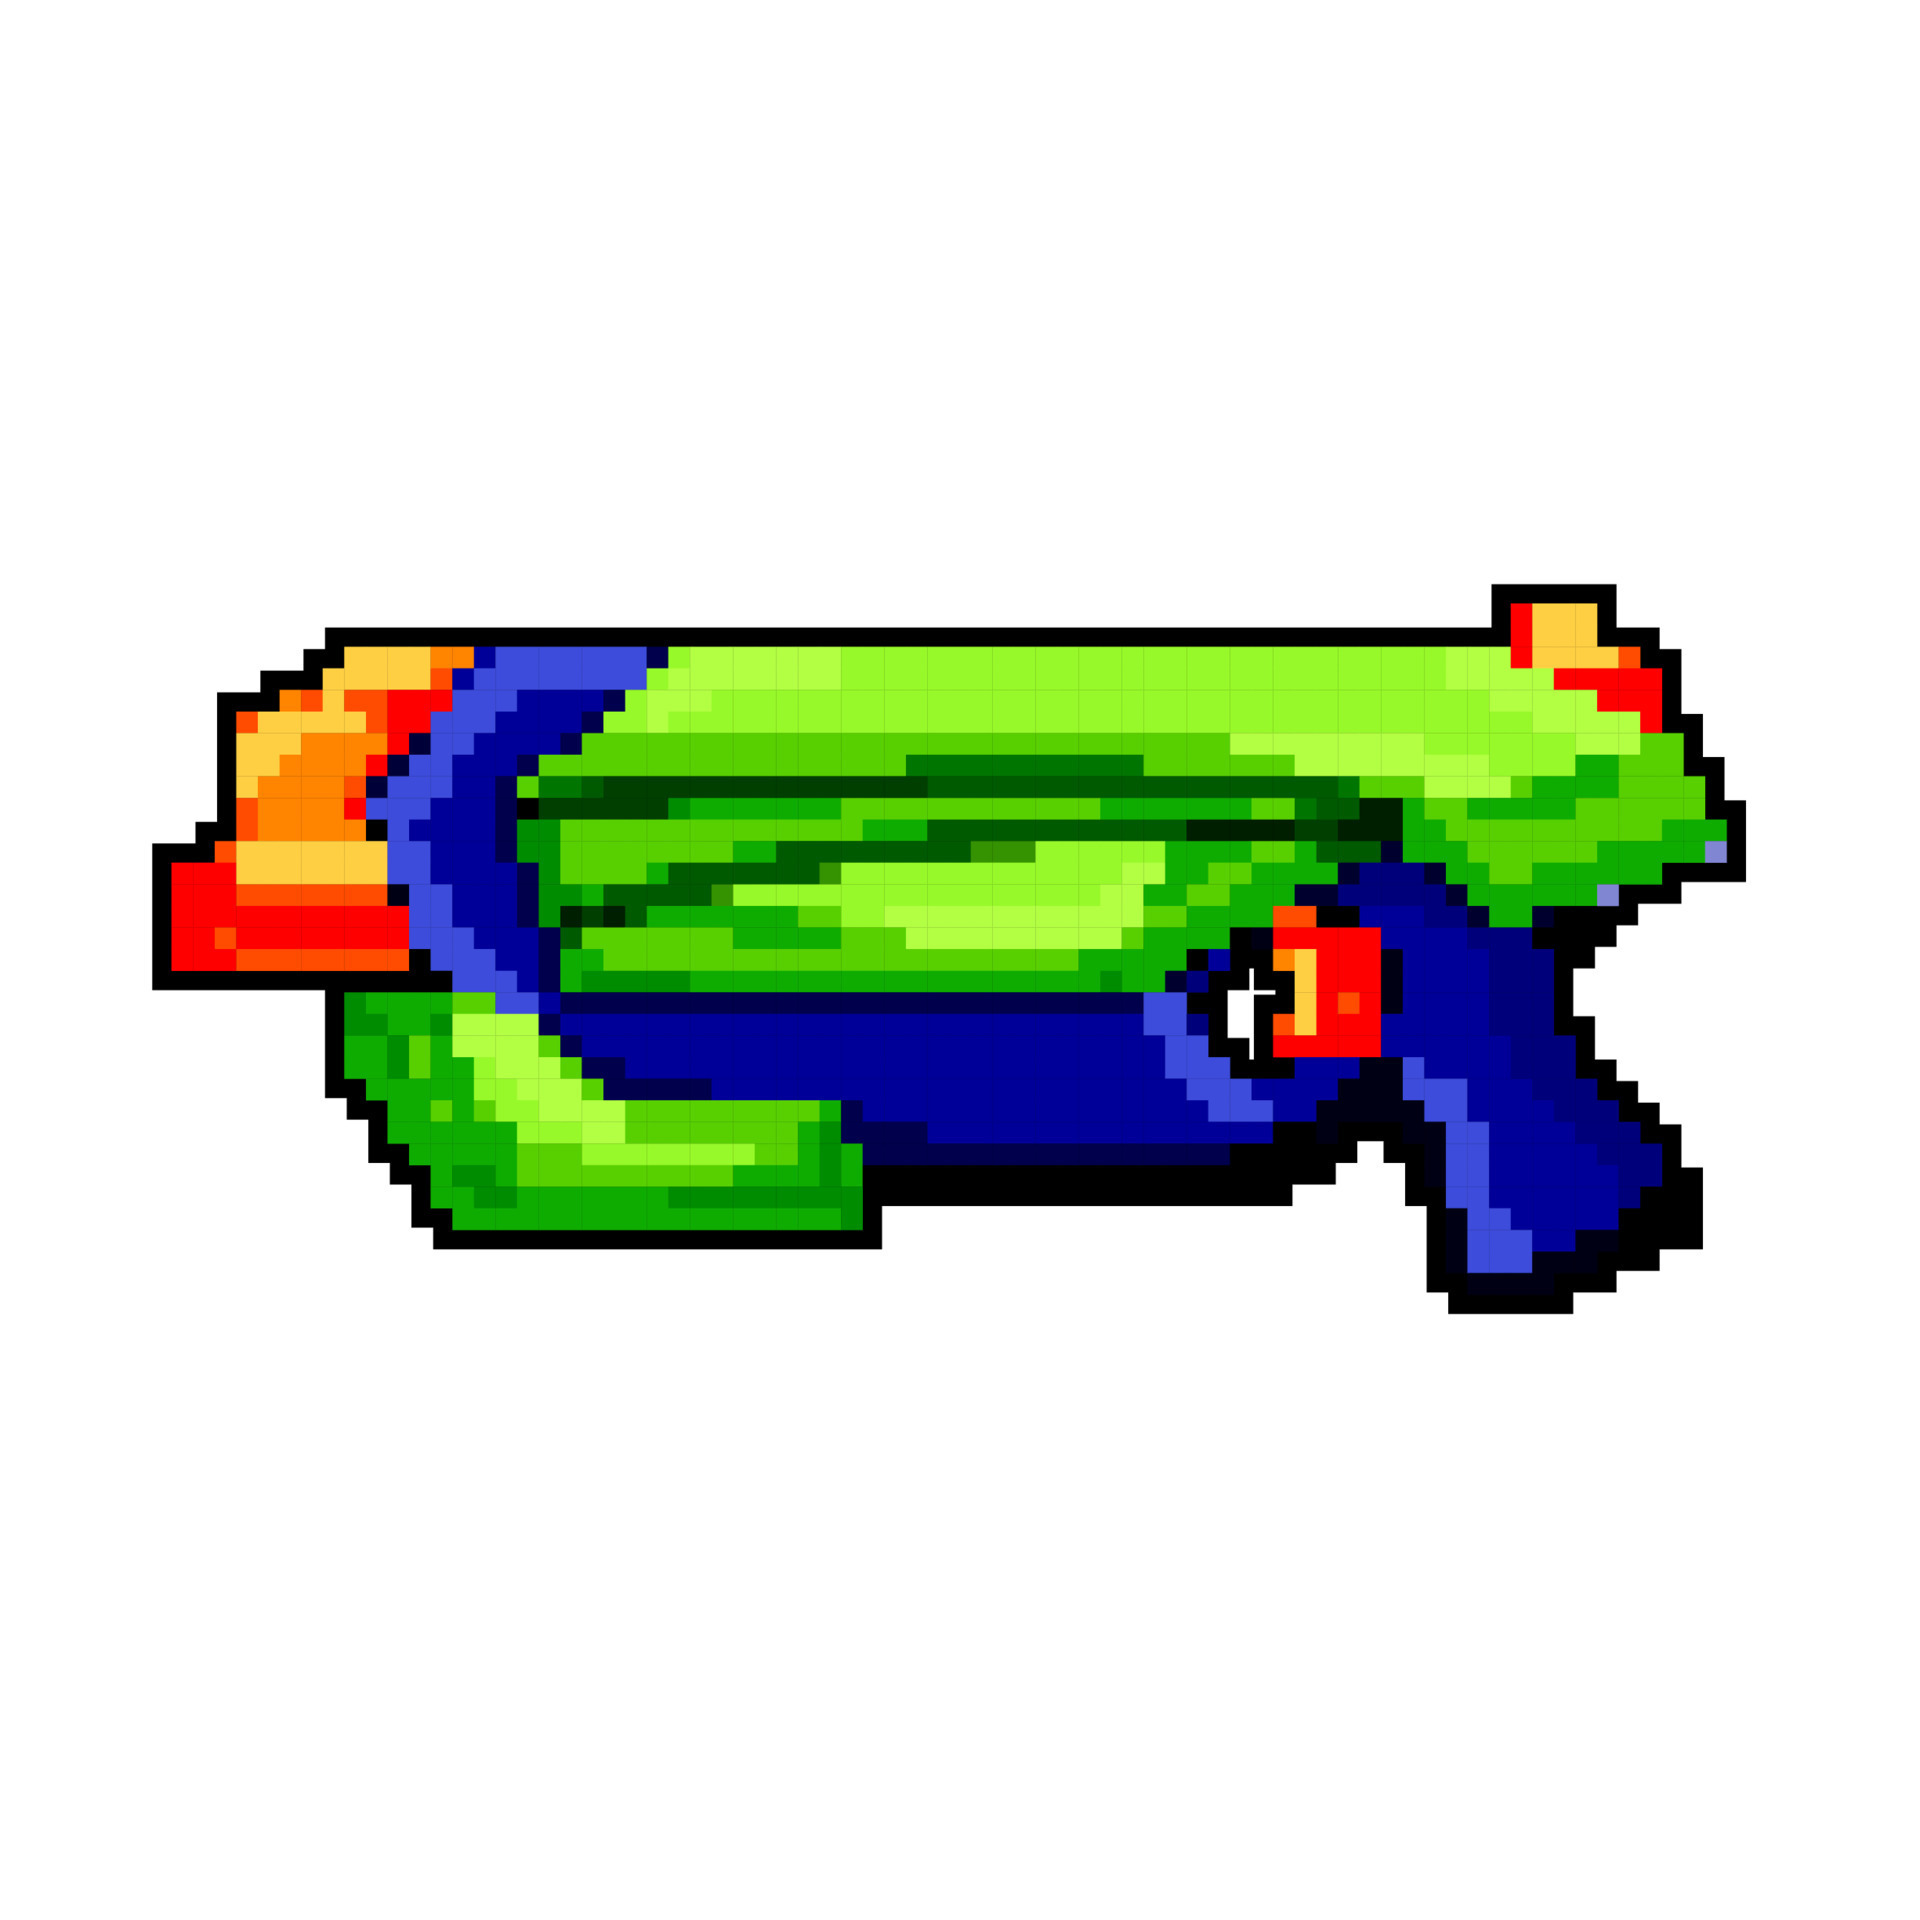 jogos água arma de fogo brinquedo jogos pixel arte vetor ilustração  23873200 Vetor no Vecteezy